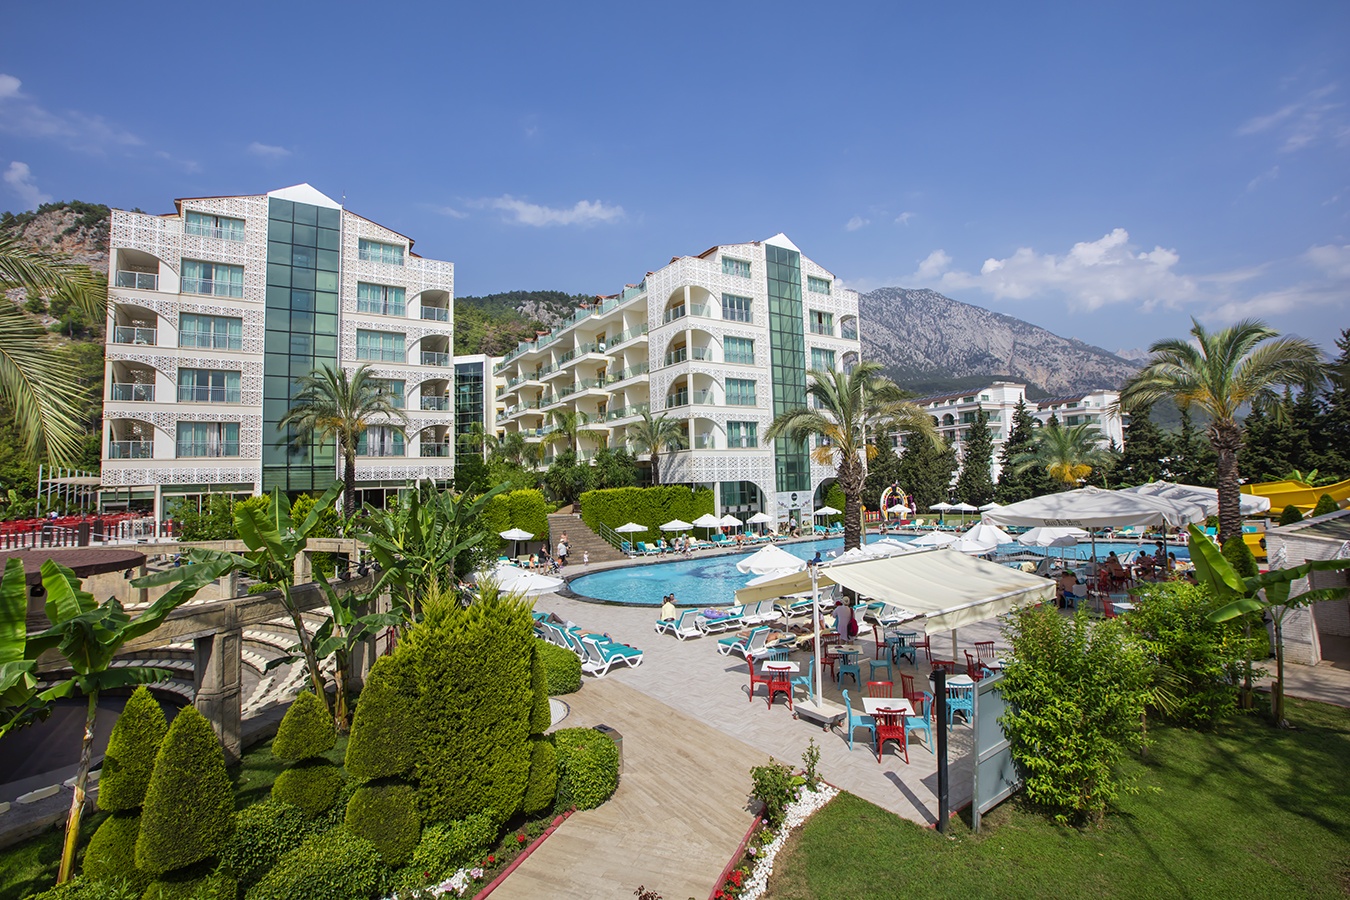 Grand Ring Hotel 5* Кемер Турция - купить тур, цены на июнь июль июль август